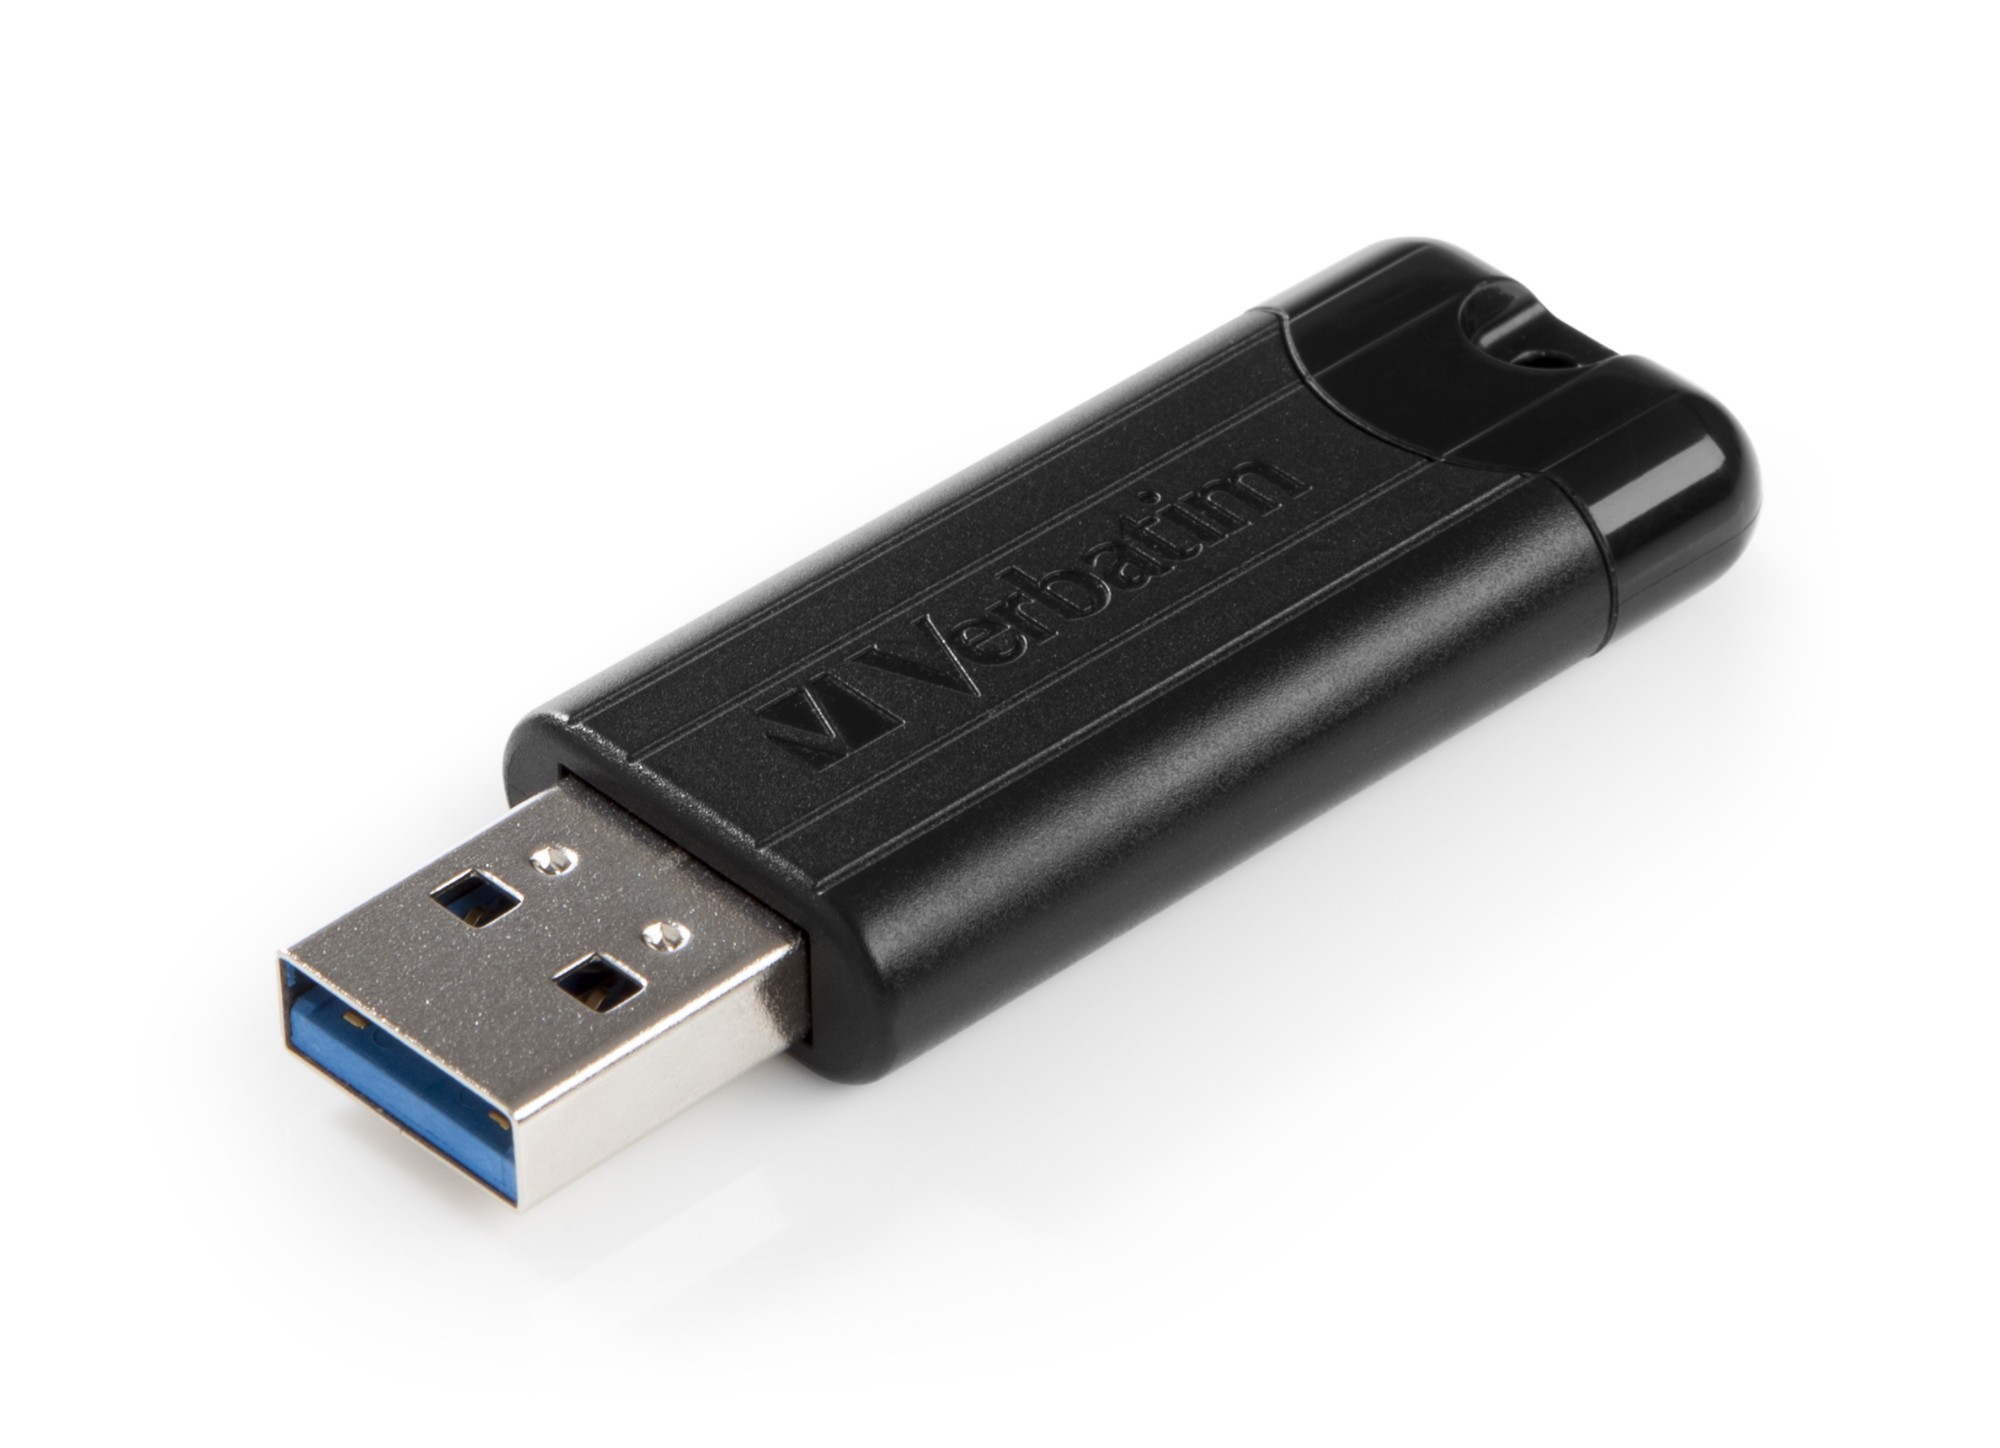 Verbatim PinStripe 3.0 - USB 3.0 Drive 32 GB – - Black